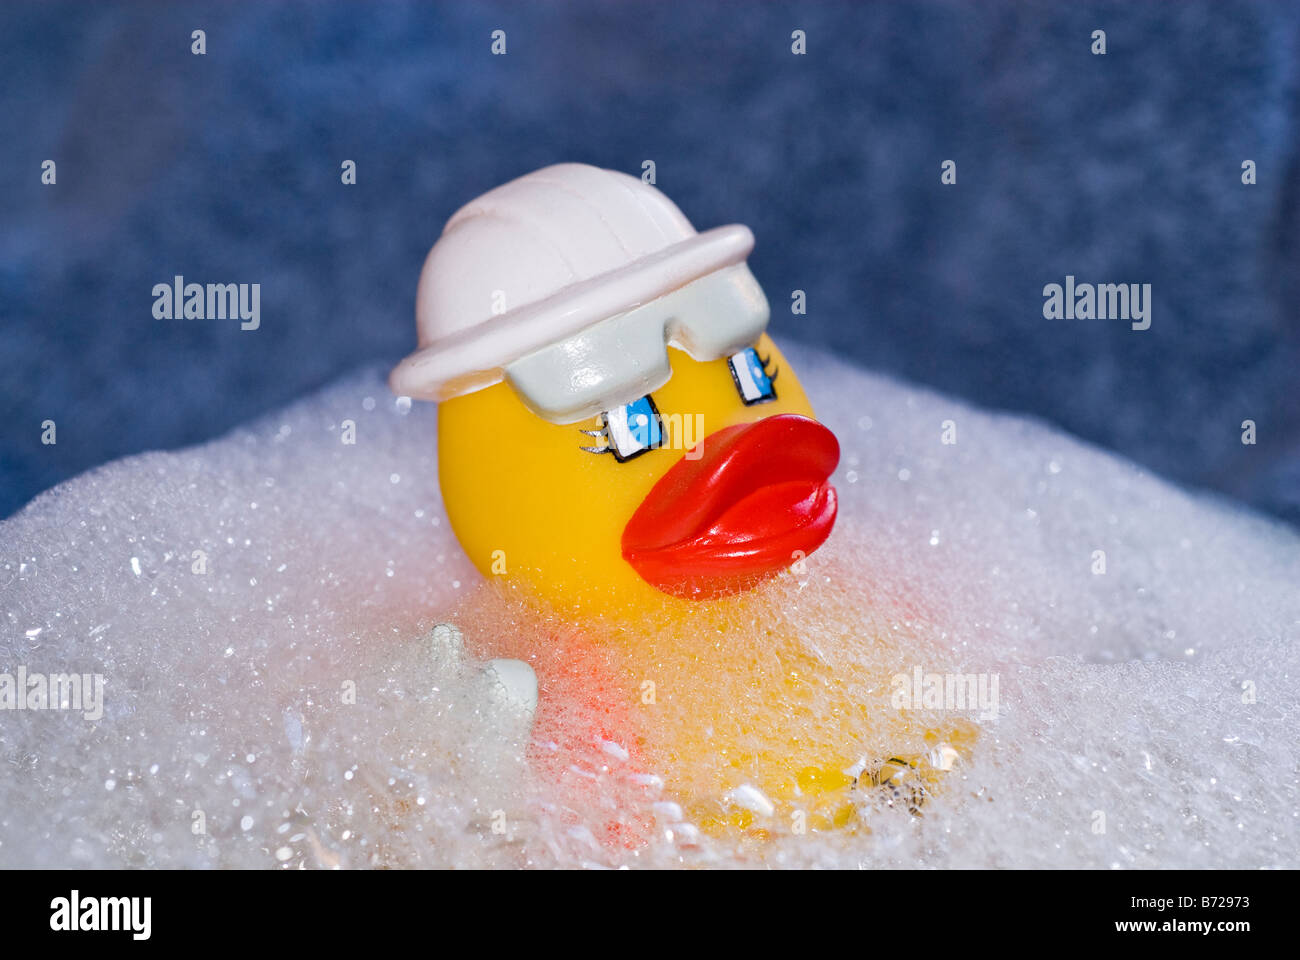 Canard en caoutchouc flottant dans un baquet d'eau du bain bouillonnant et savonneux. Stock Photography par cahyman. Banque D'Images